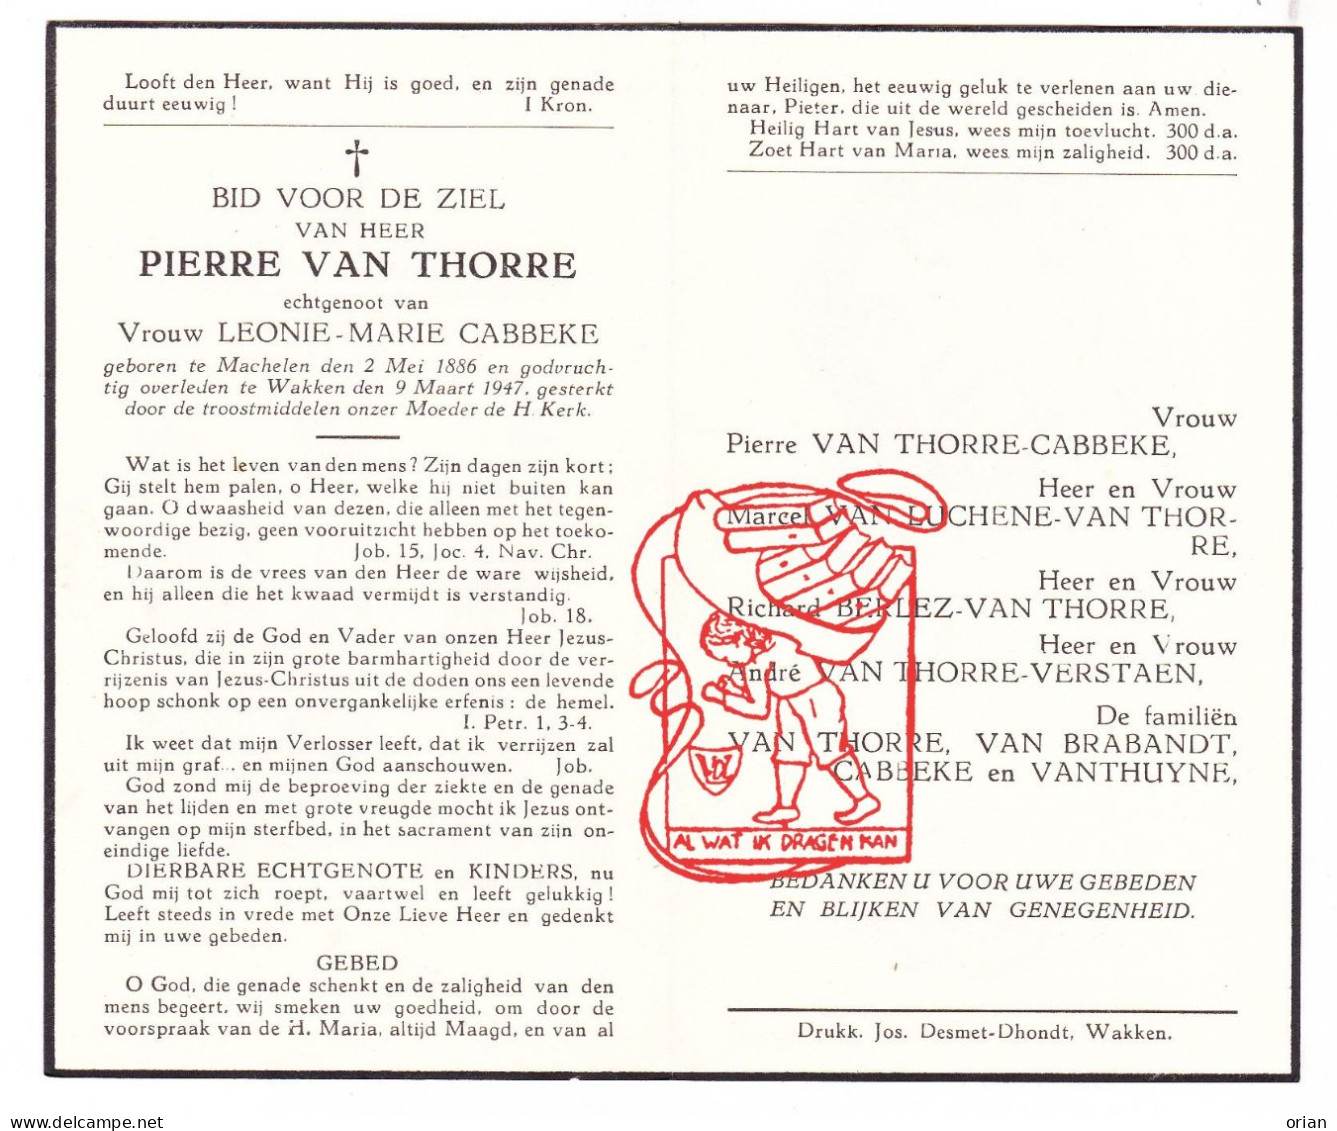 DP Pierre Van Thorre ° Machelen Zulte 1886 † Wakken Dentergem 1947 Cabbeke Van Luchene Berlez Verstaen Brabandt Thuyne - Devotieprenten